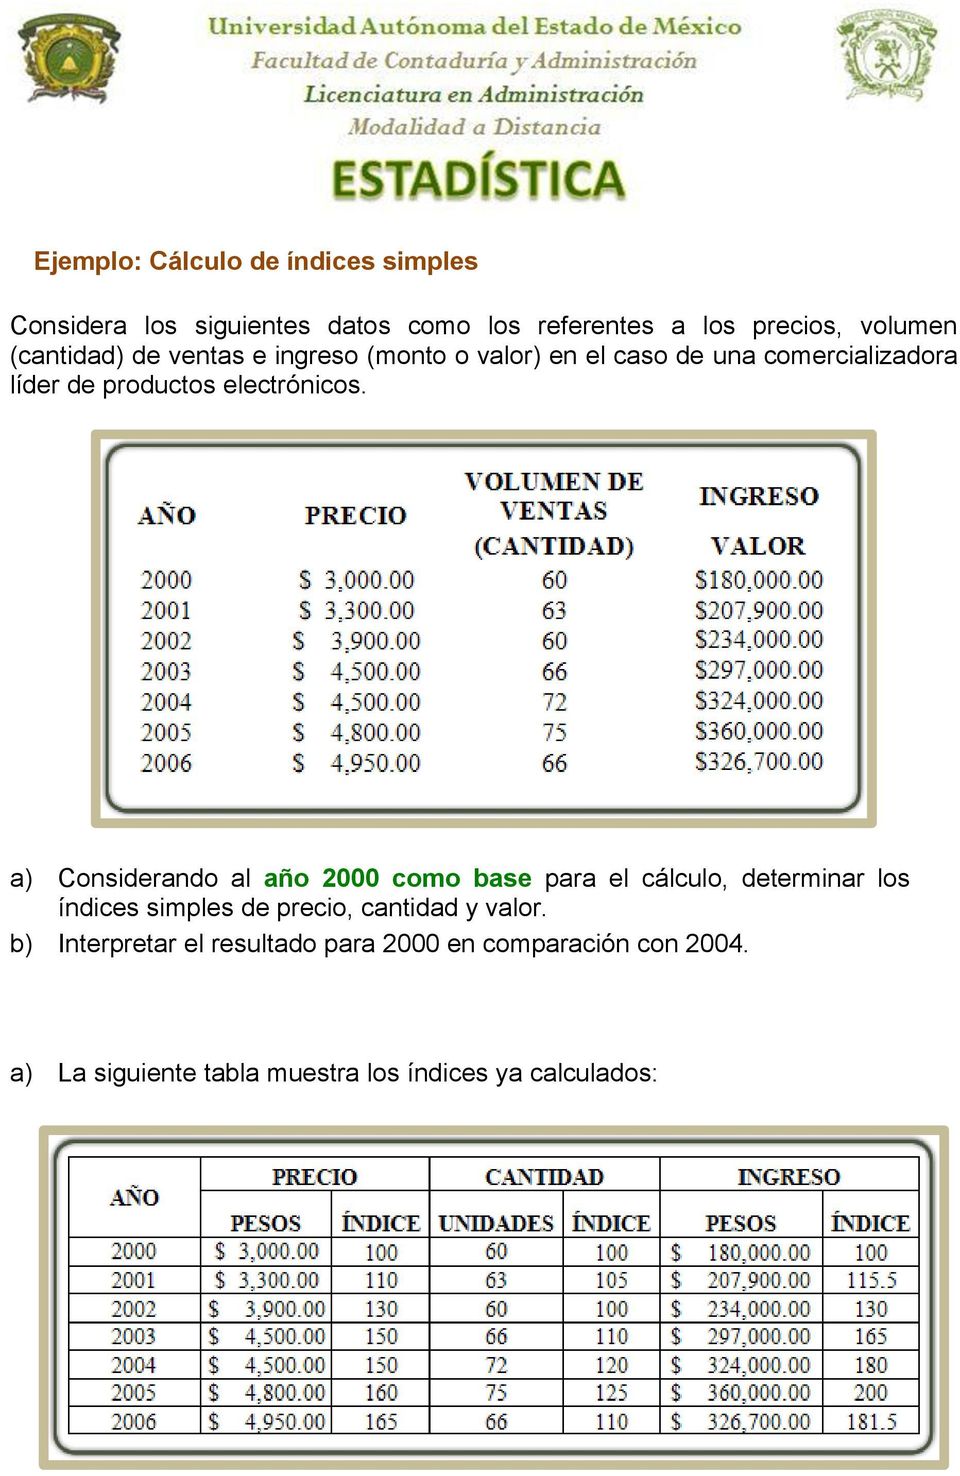 a) Considerando al año 2000 como base para el cálculo, determinar los índices simples de precio, cantidad y valor.